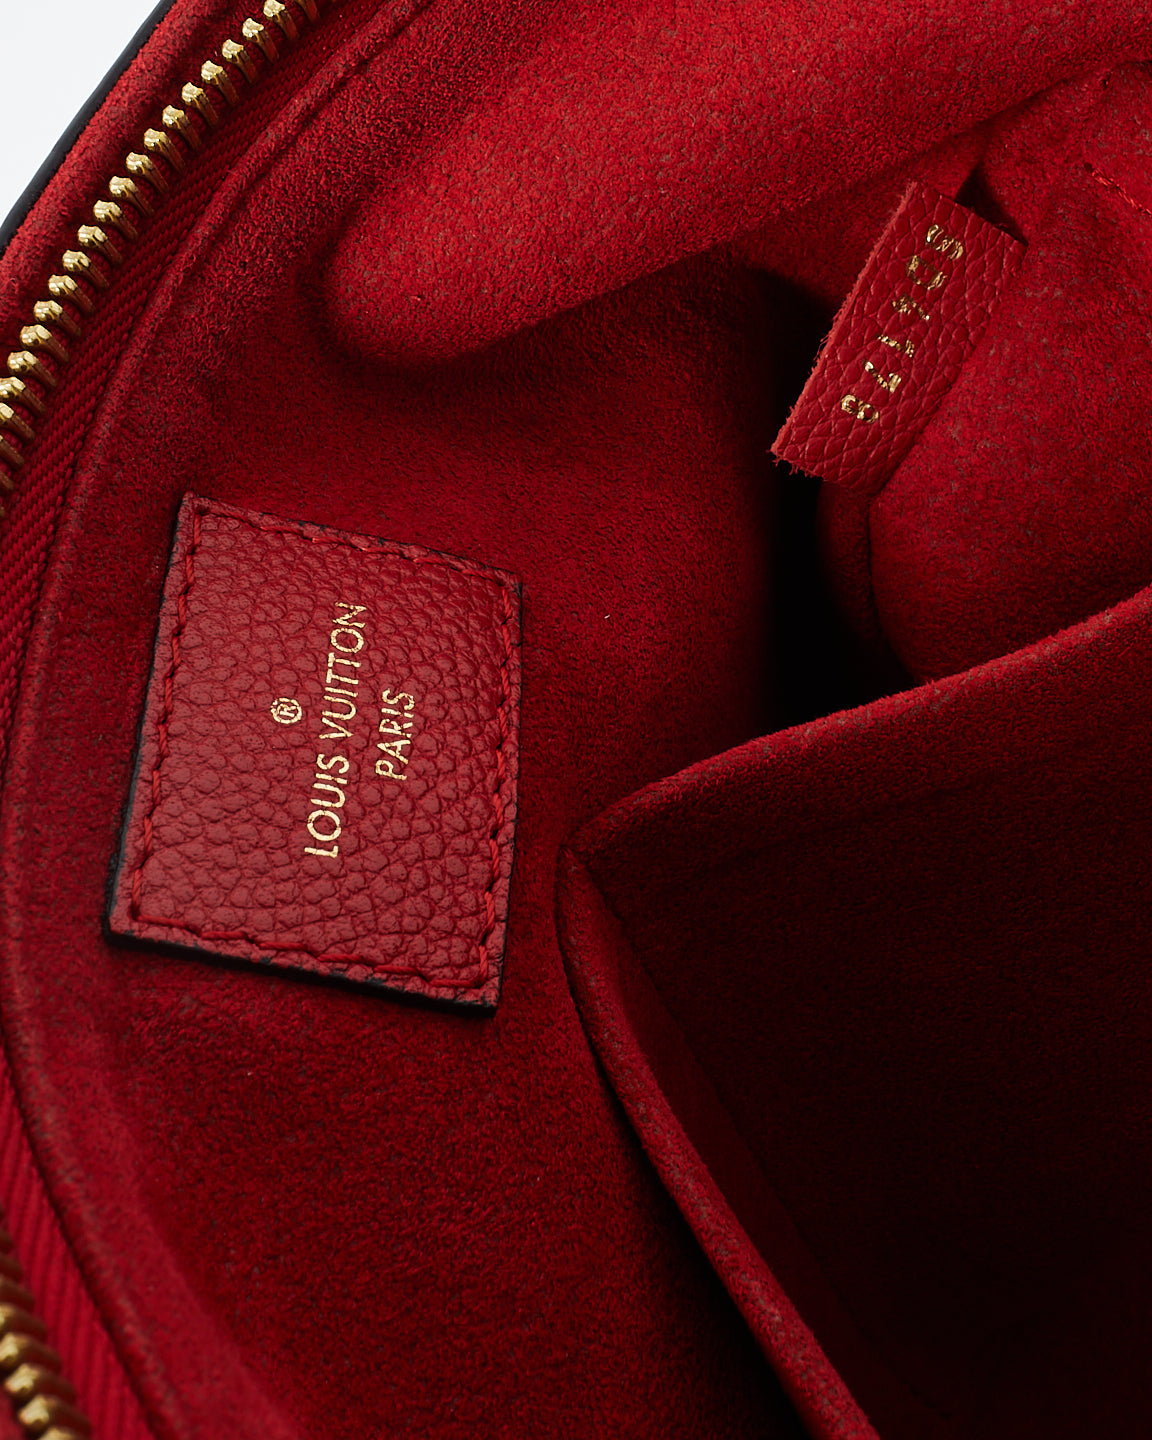 Louis Vuitton Monogram Canvas & Red Leather Suréne MM Bag